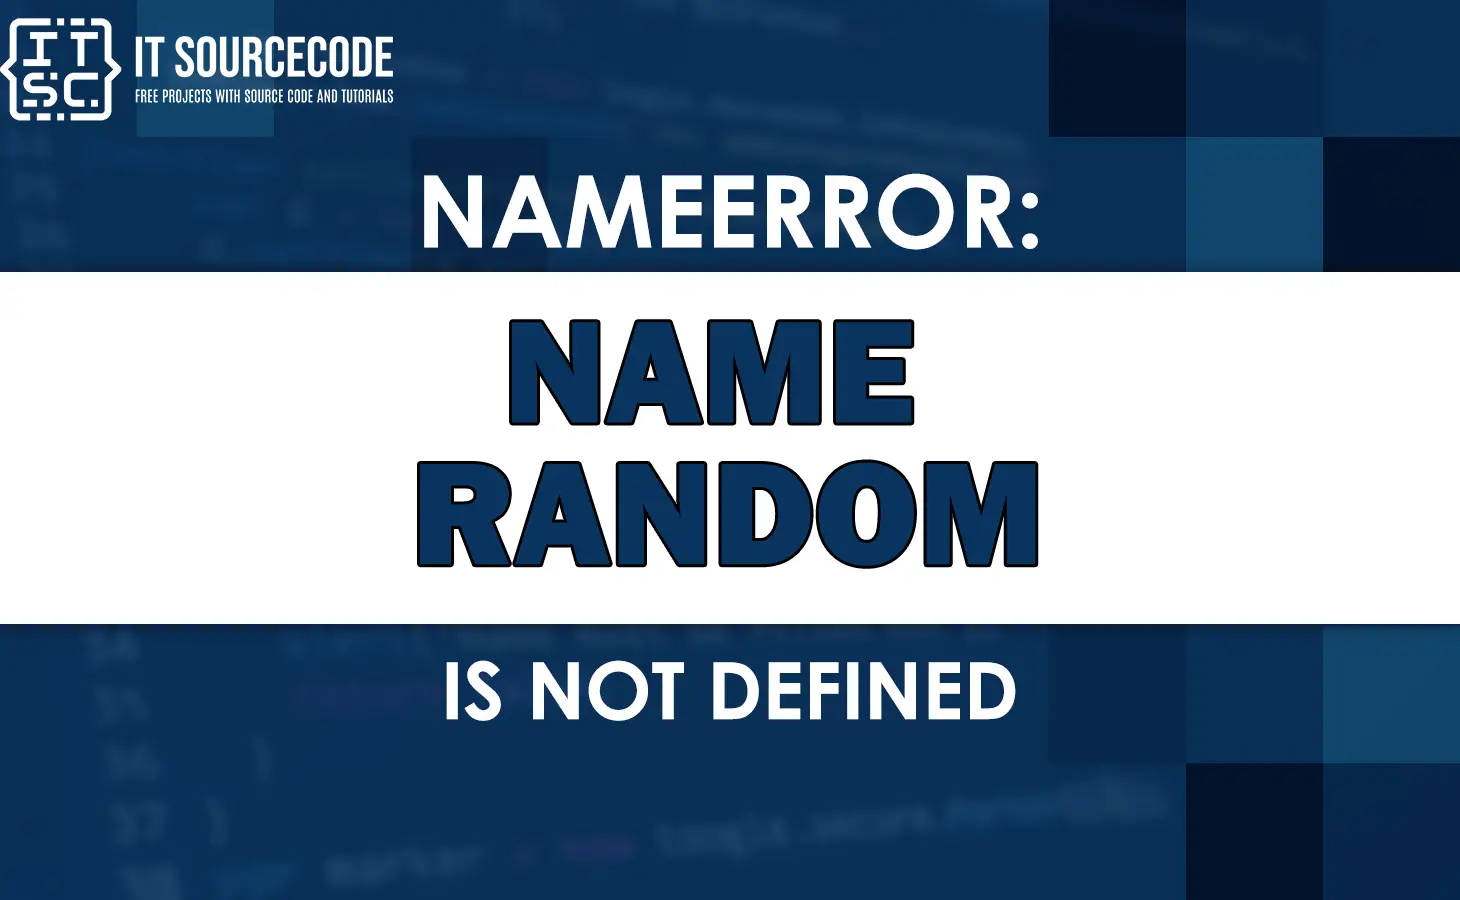 Nameerror: name random is not defined